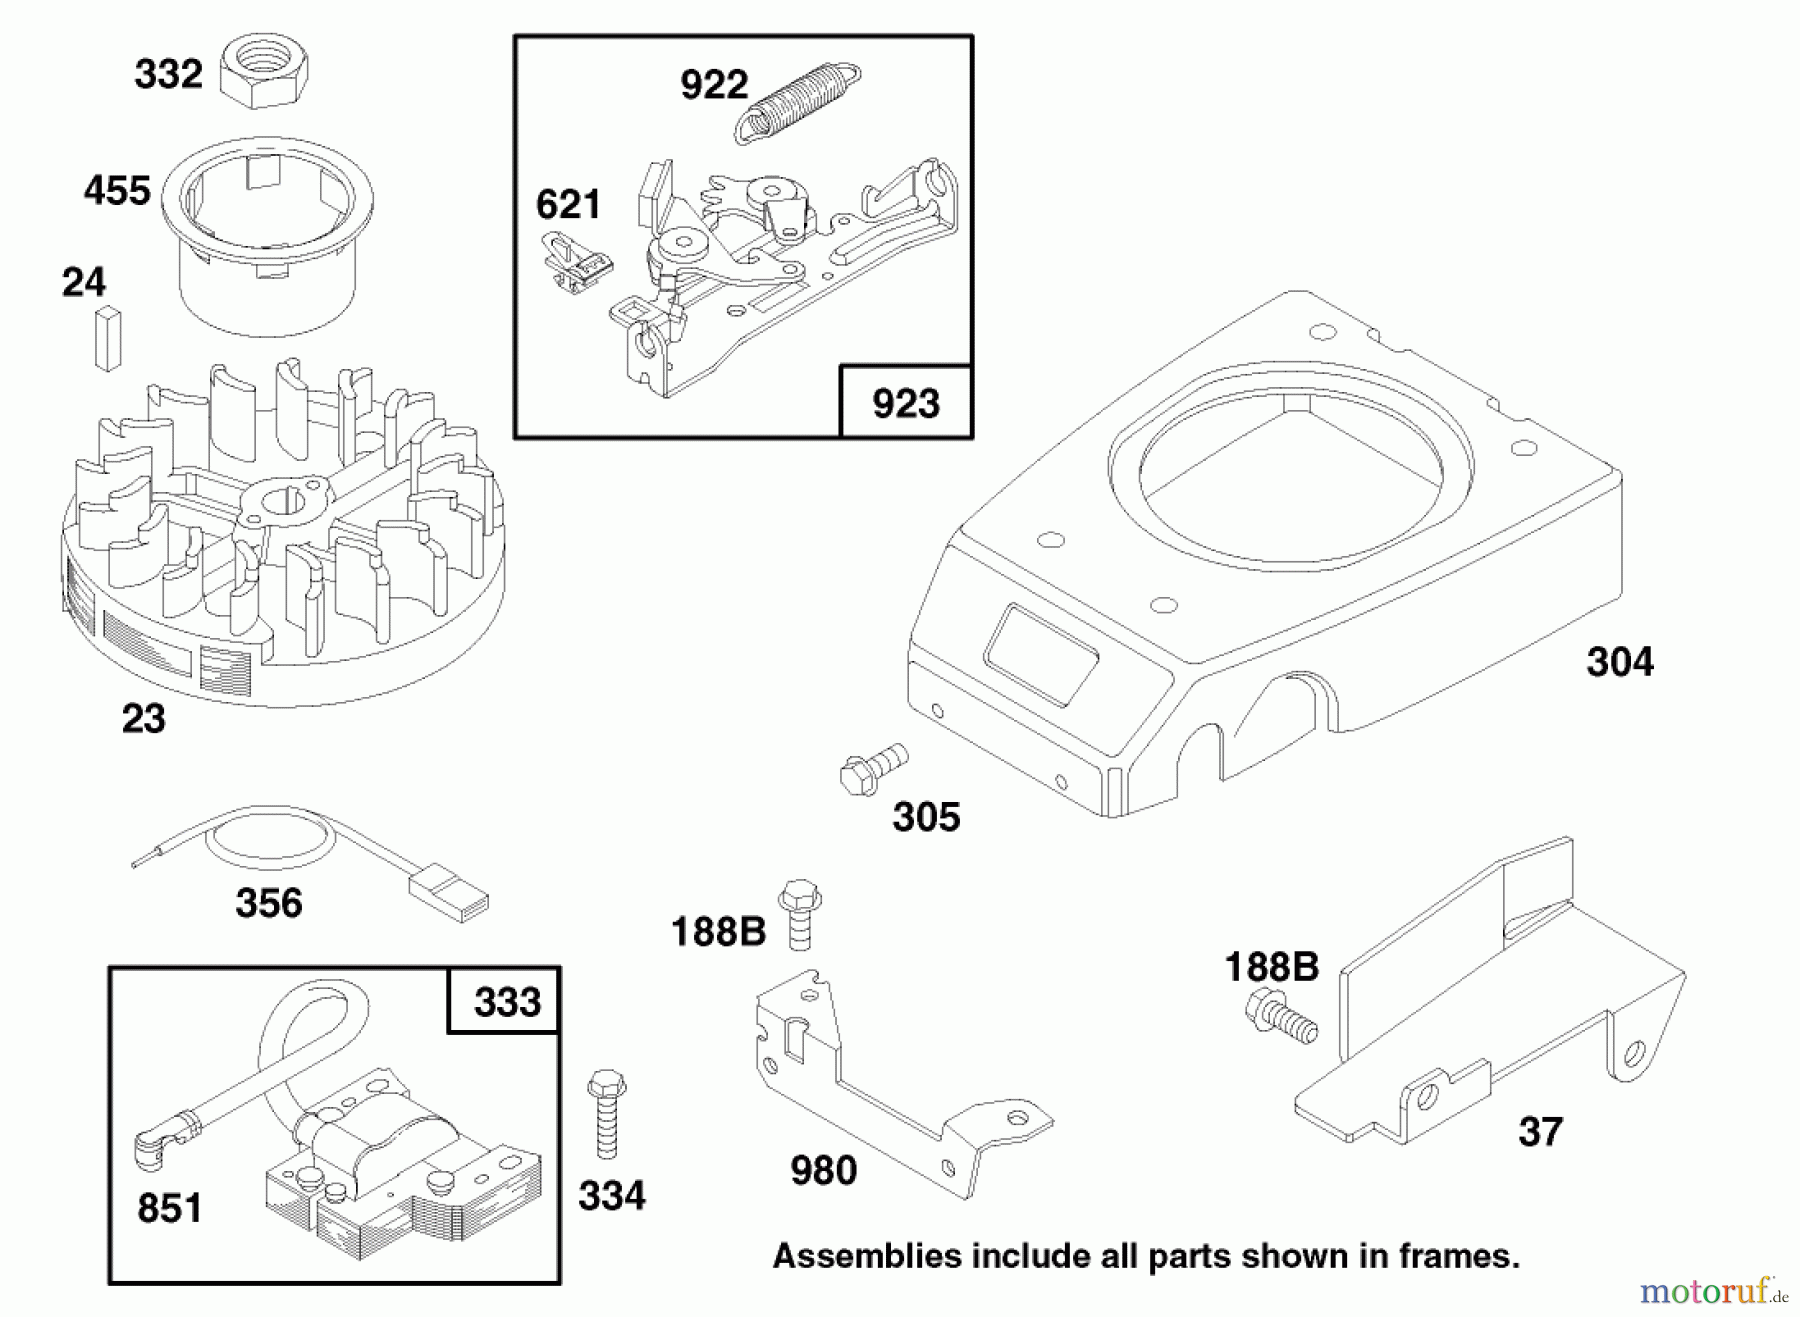  Toro Neu Mowers, Walk-Behind Seite 2 26632 - Toro Lawnmower, 1997 (7900001-7999999) ENGINE GTS 150 #6